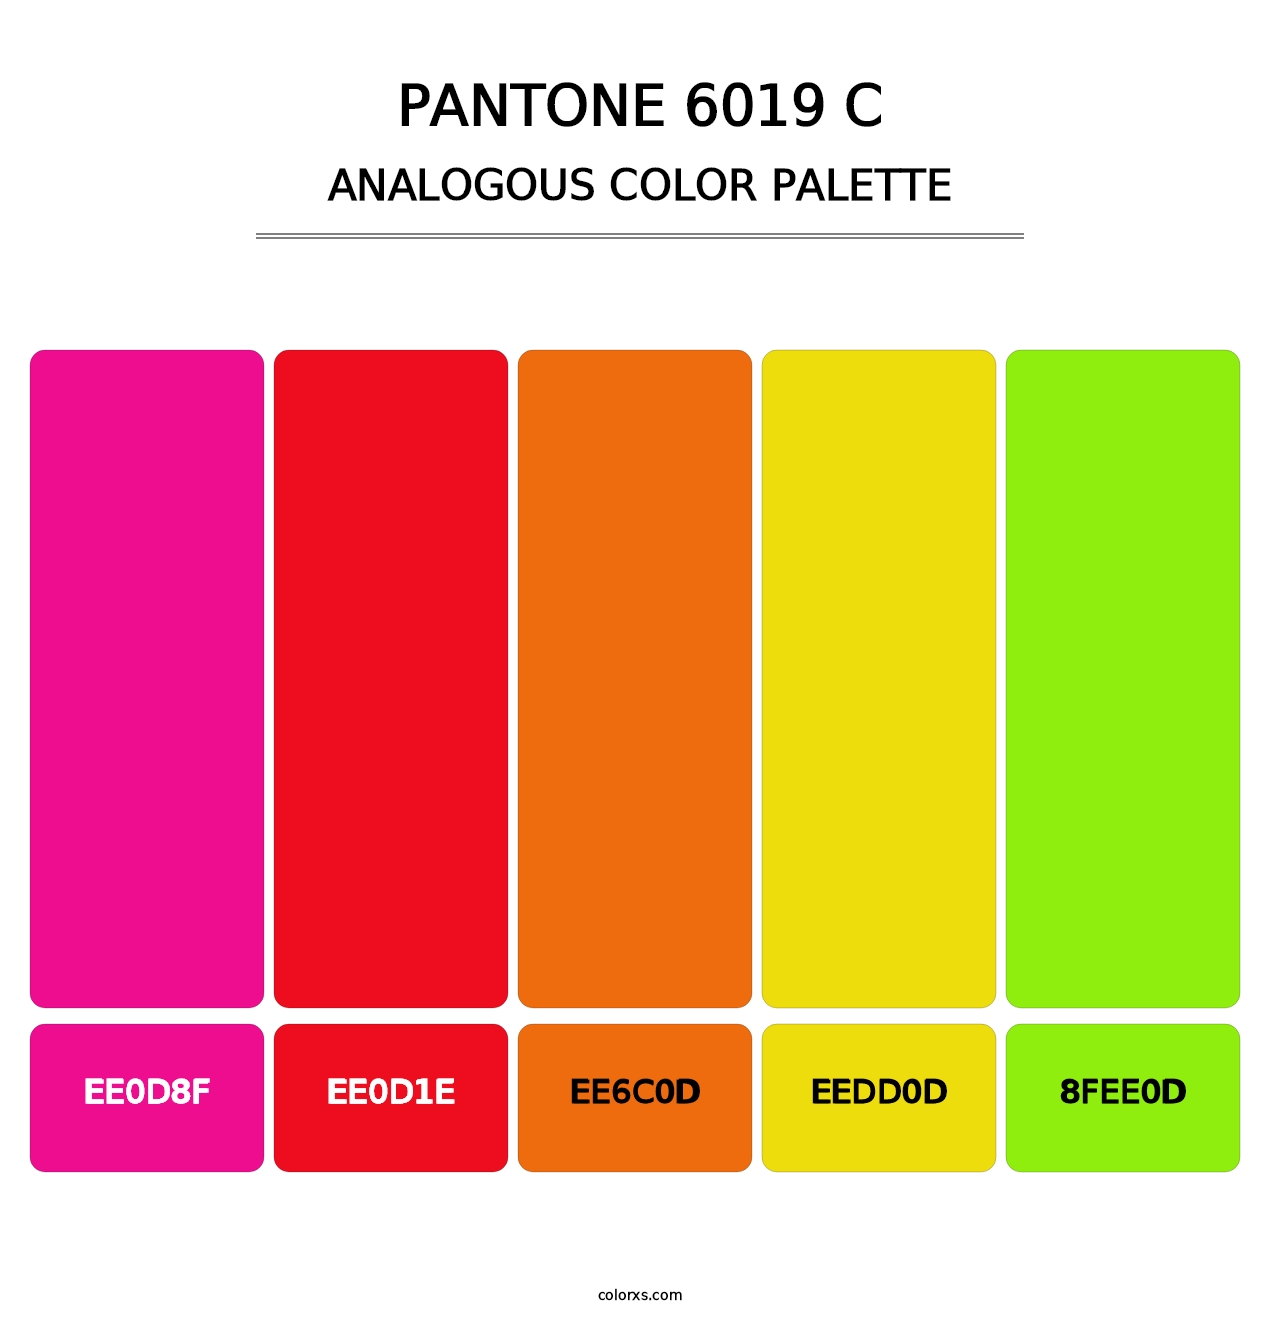 PANTONE 6019 C - Analogous Color Palette